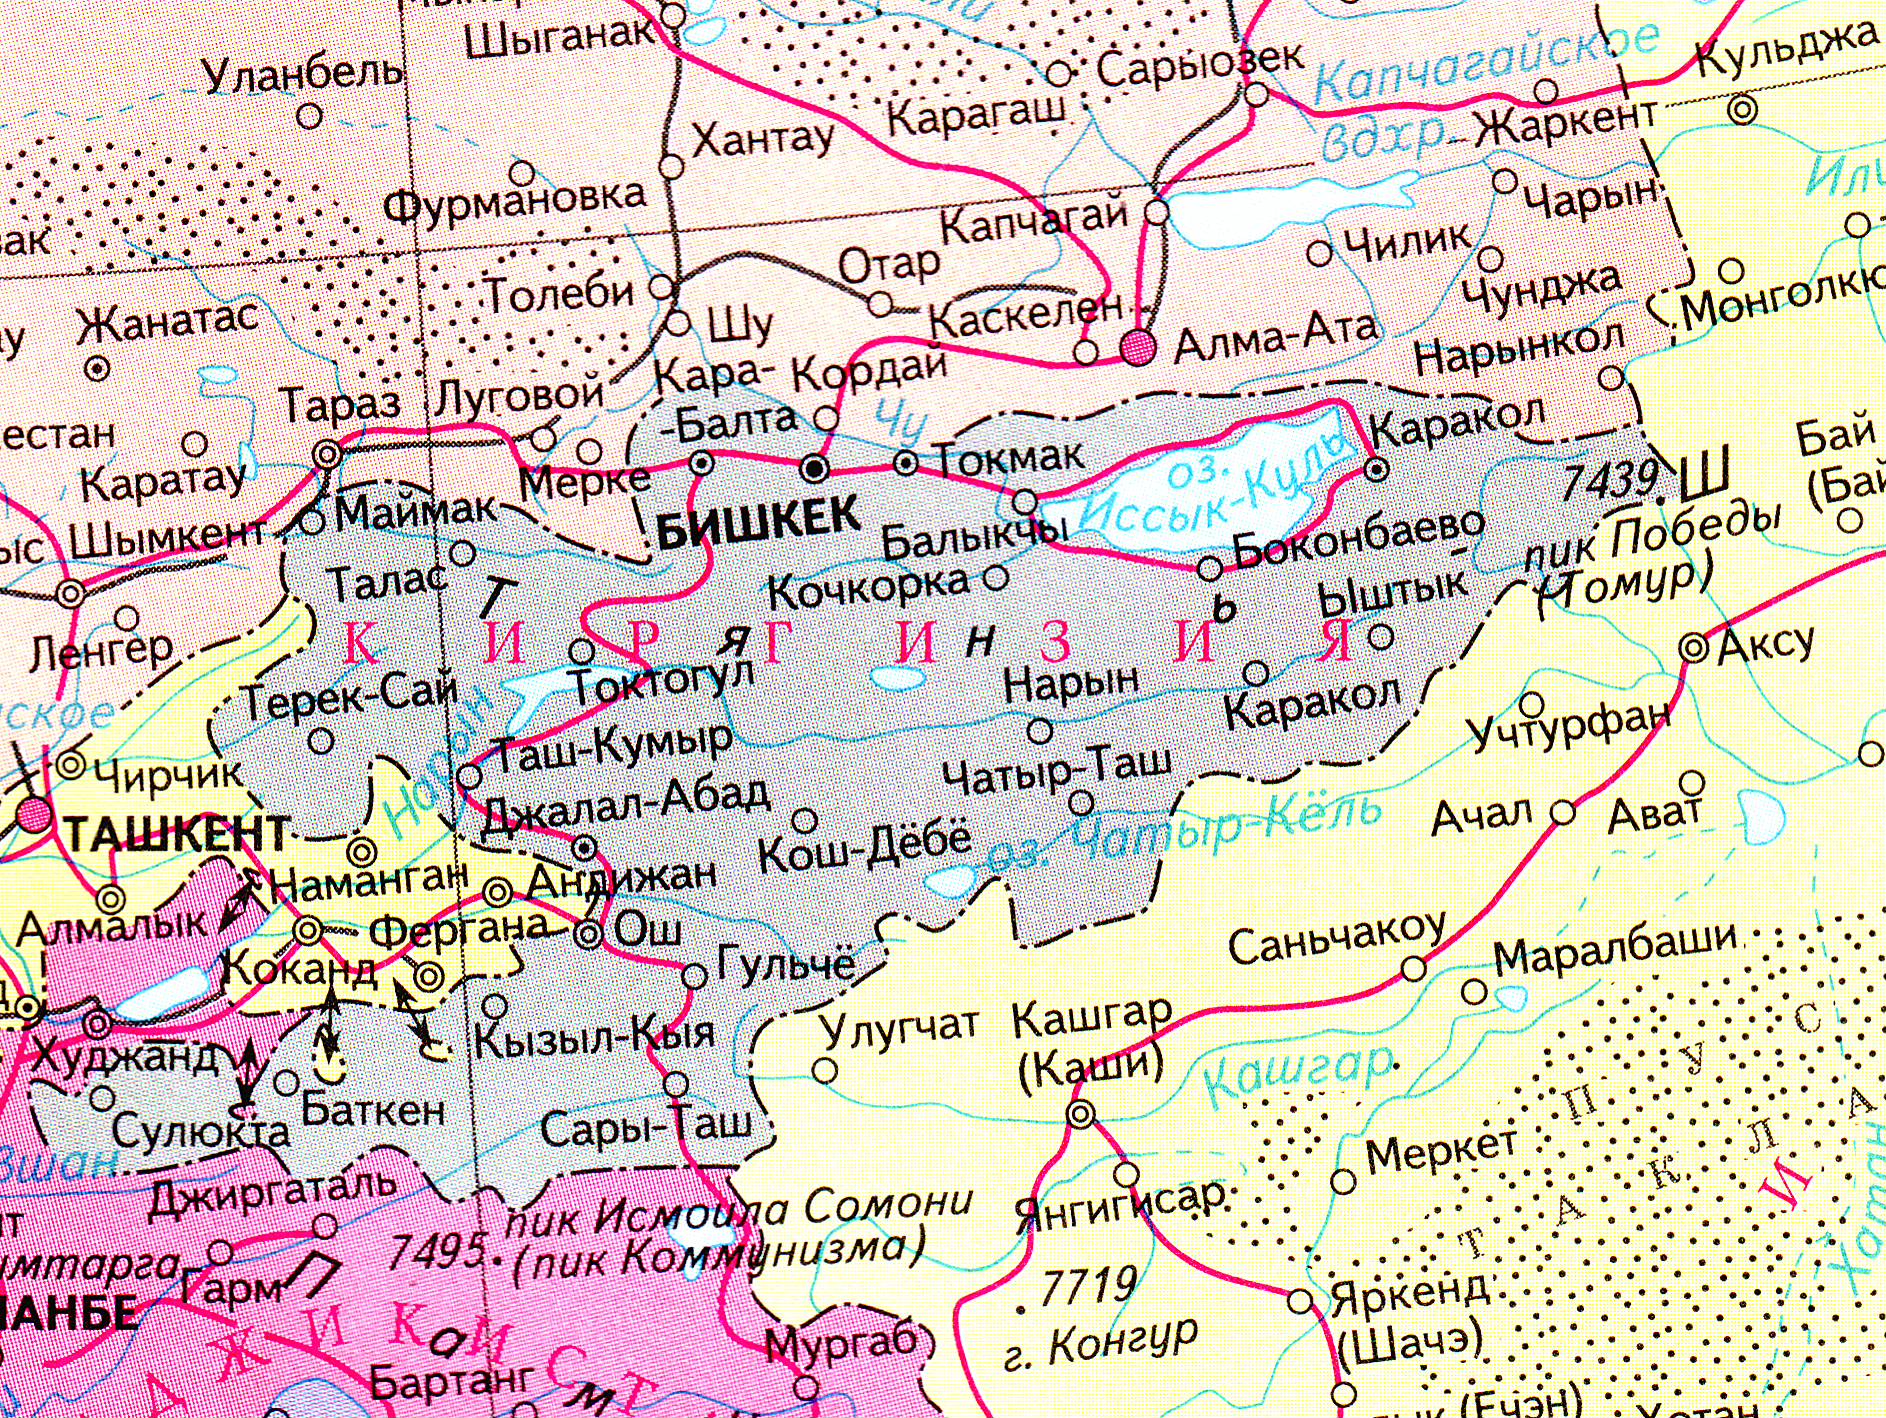 GEO. Киргизия. Столица, площадь, население, города, карта...